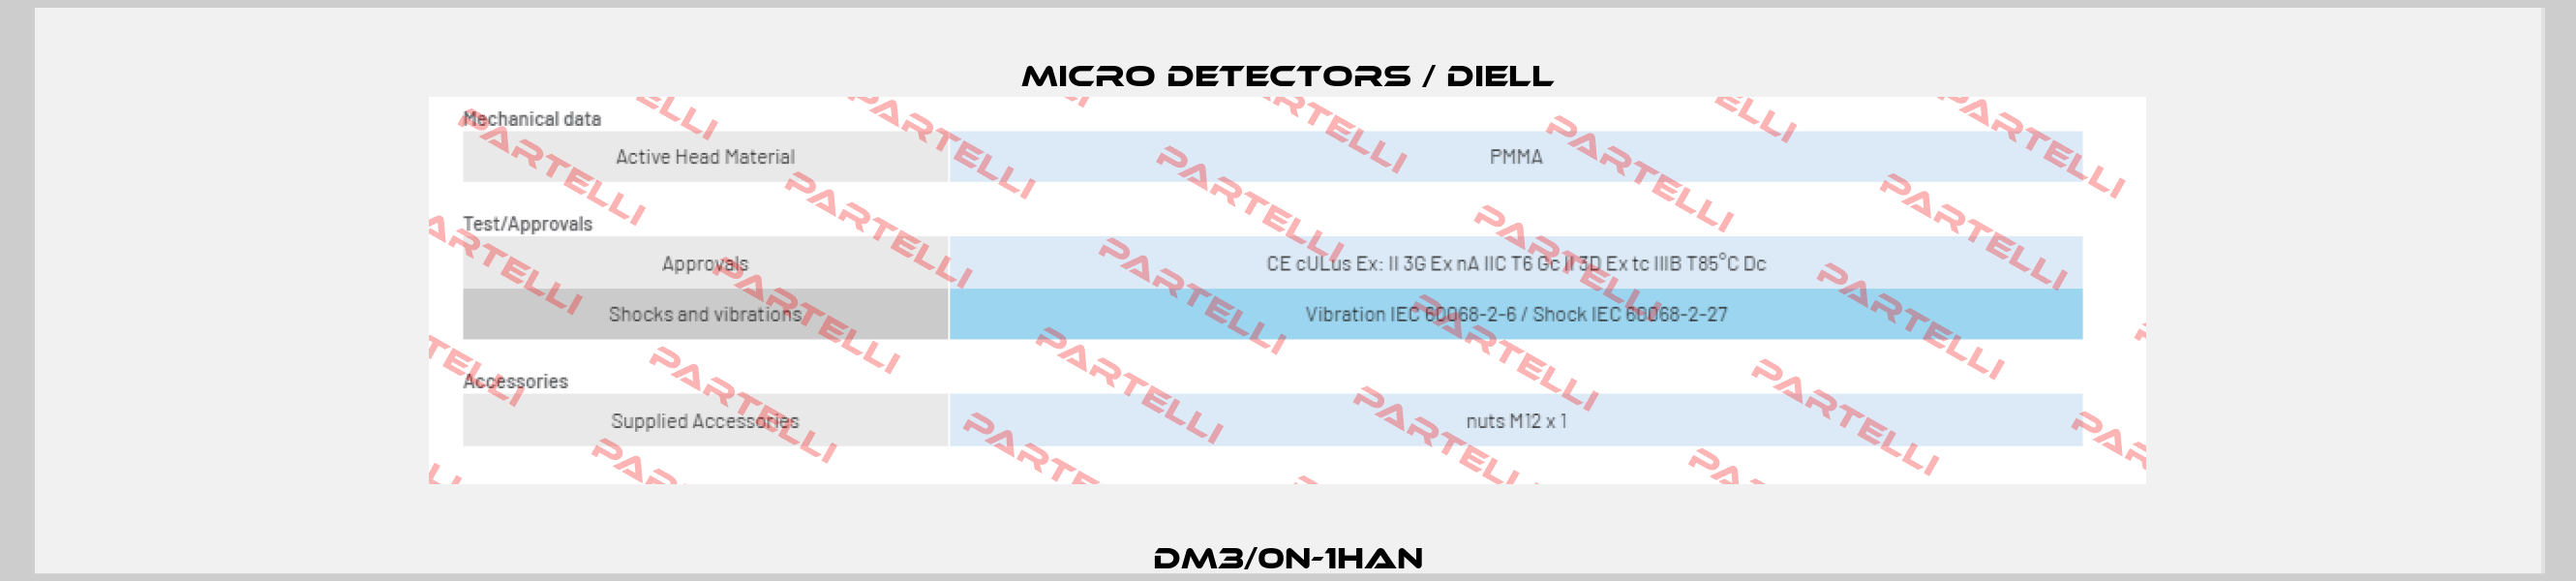 DM3/0N-1HAN Micro Detectors / Diell